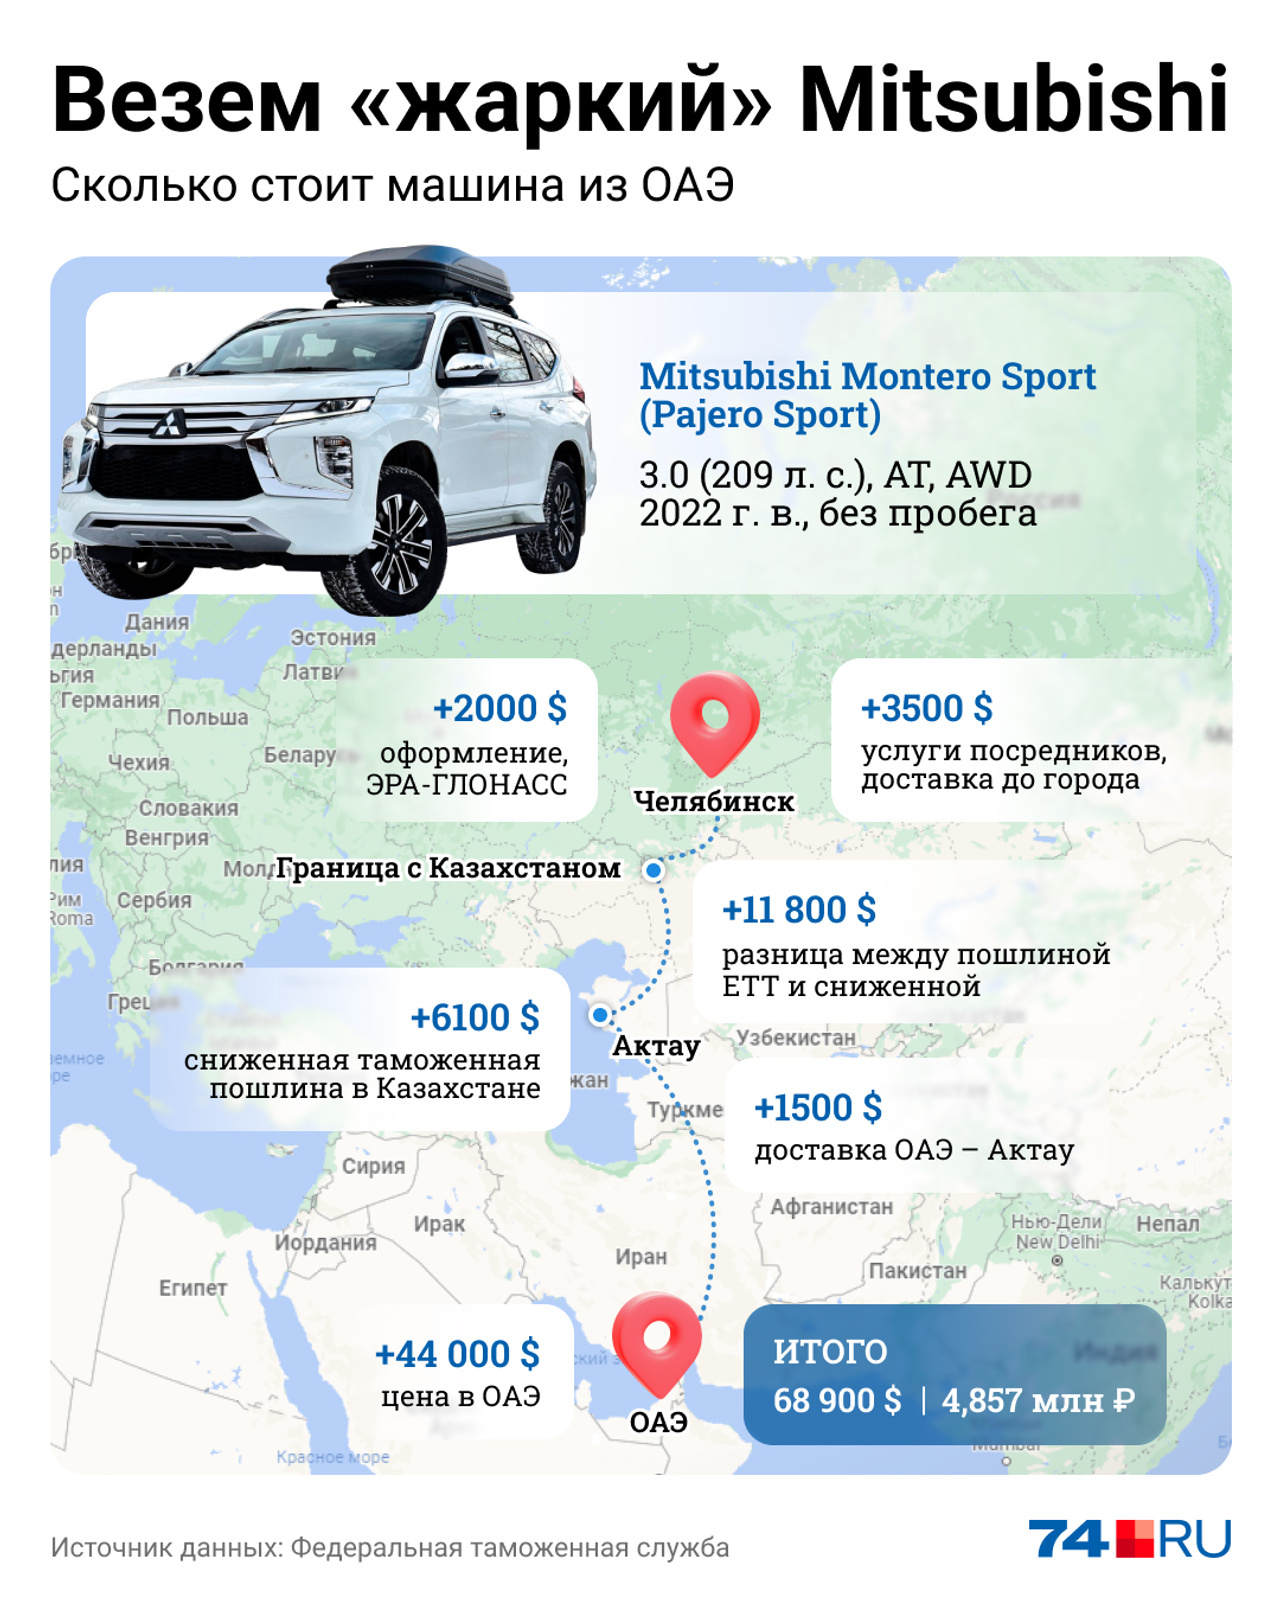 На этой инфографике мы показывали, как казахская схема позволяет сэкономить при ввозе Mitsubishi Montero Sport из ОАЭ около $ 12 тысяч (более 1 млн рублей): такова разница между едиными таможенными пошлинами и внутренними казахскими